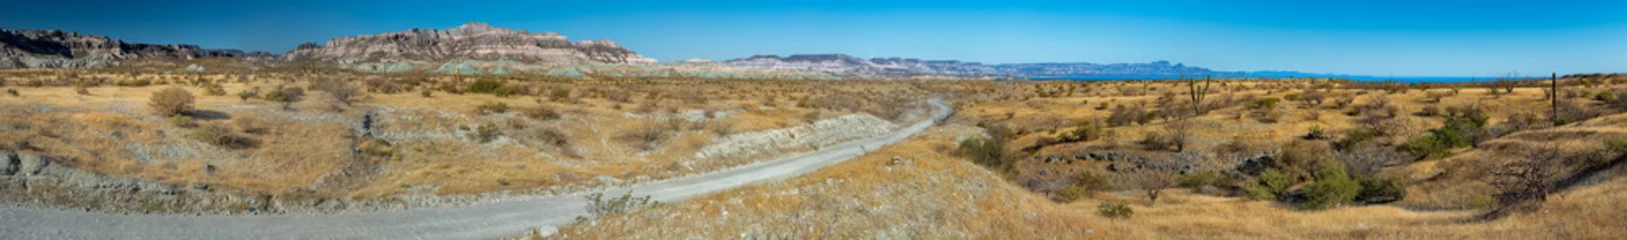 Zelfklevend Fotobehang baja californië landschap panorama woestijn weg © Andrea Izzotti